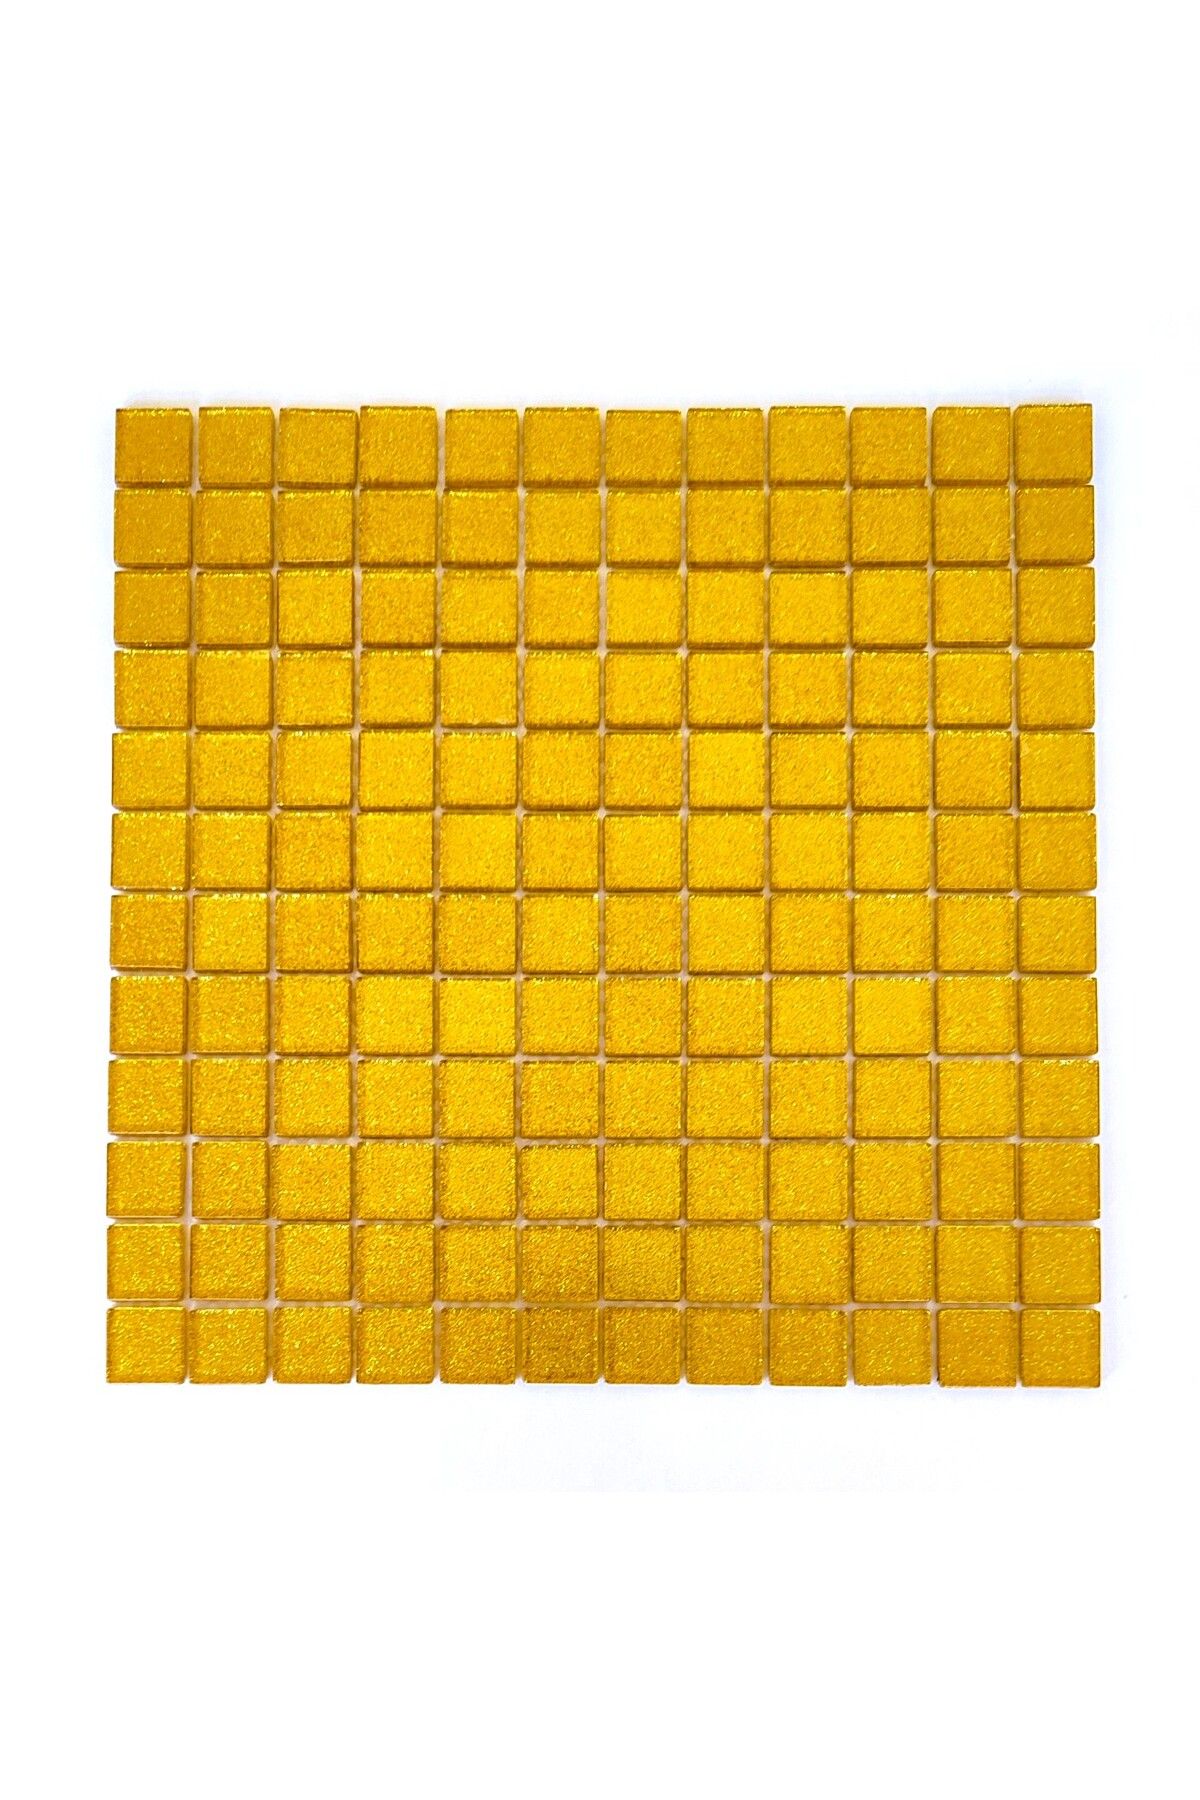 MozaiKristaL Mutfak tezgah arası ve iç dekorasyon için 23x23x4 Gold Kristal Cam Mozaik.  (1 Koli=1 m2 Fiyatıdır)